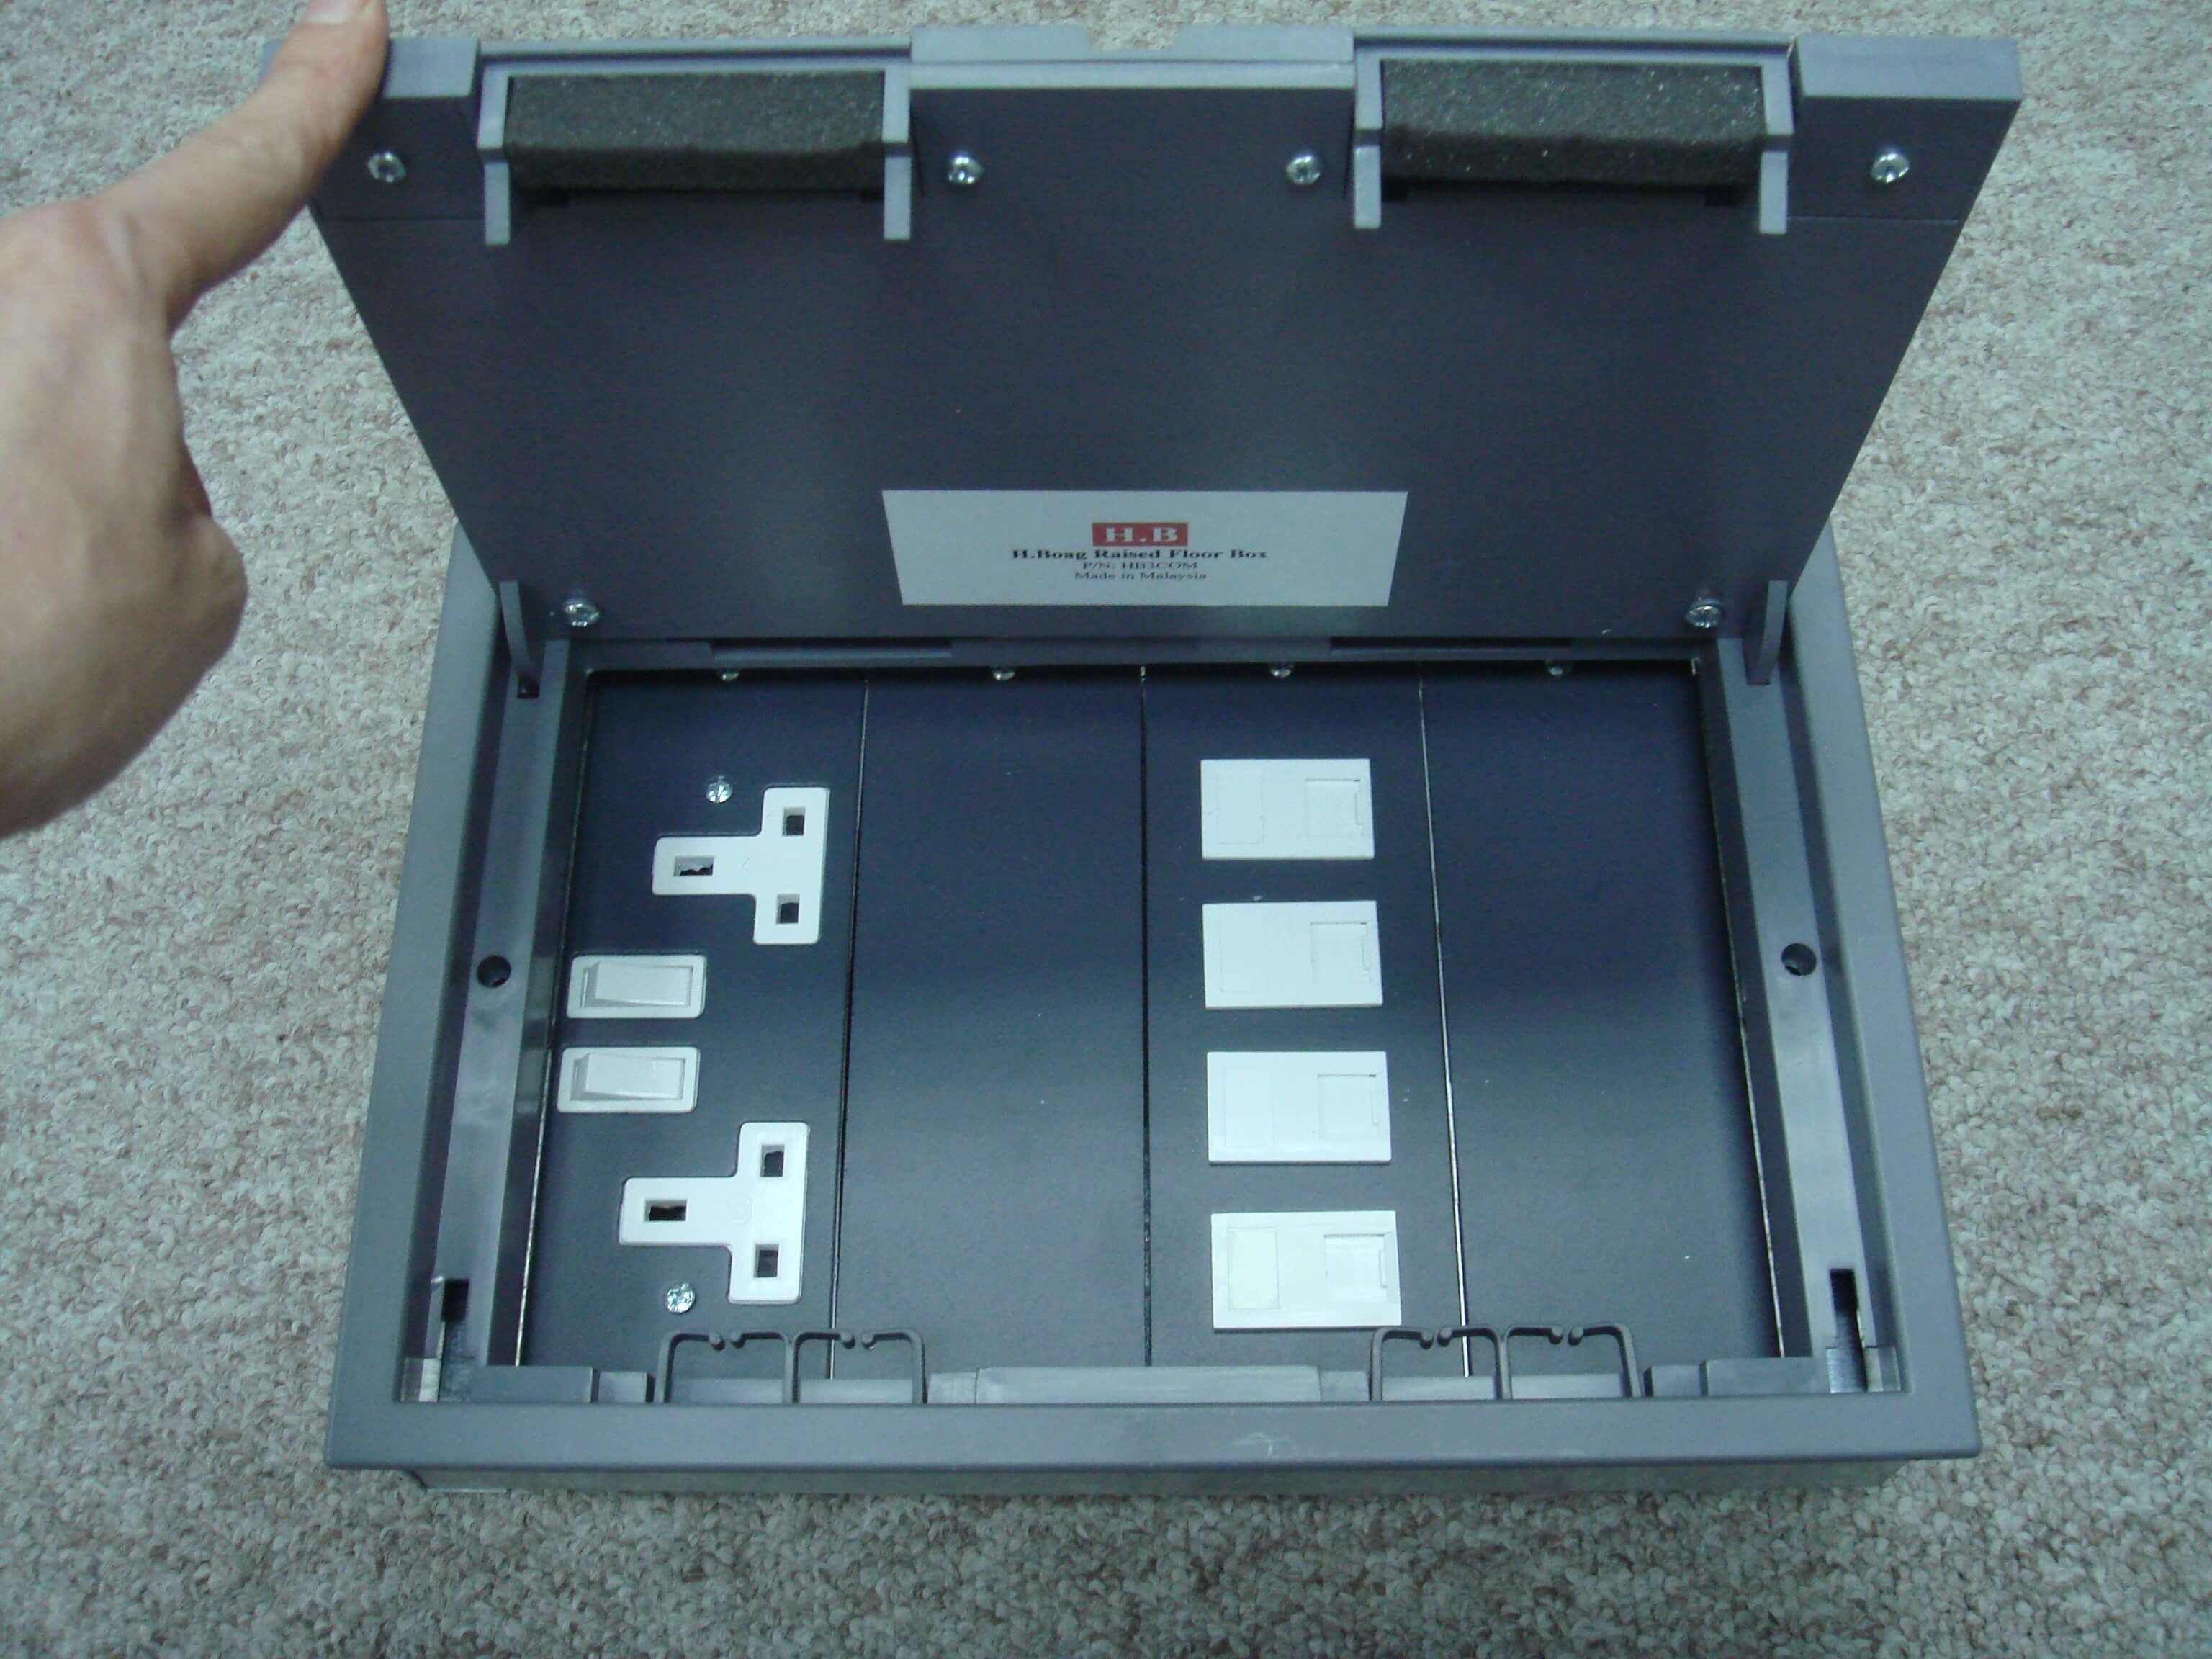 H.Boag Raised Floor Box (4 Compartment)